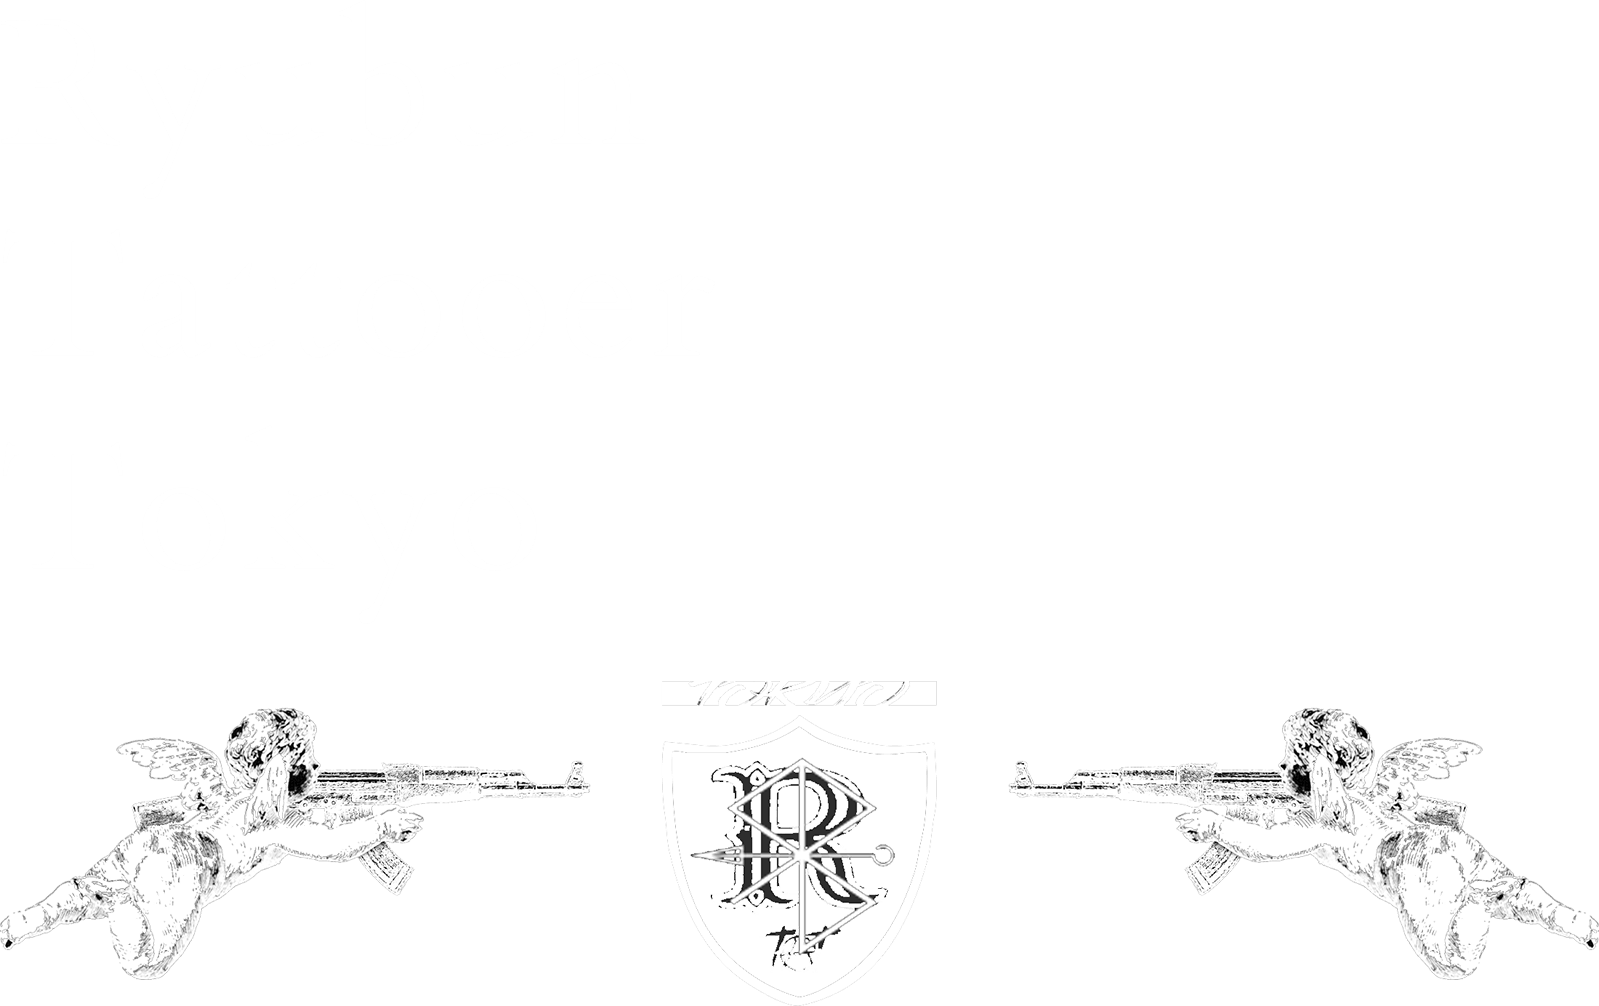 Ryubun Tattooer Tokyo